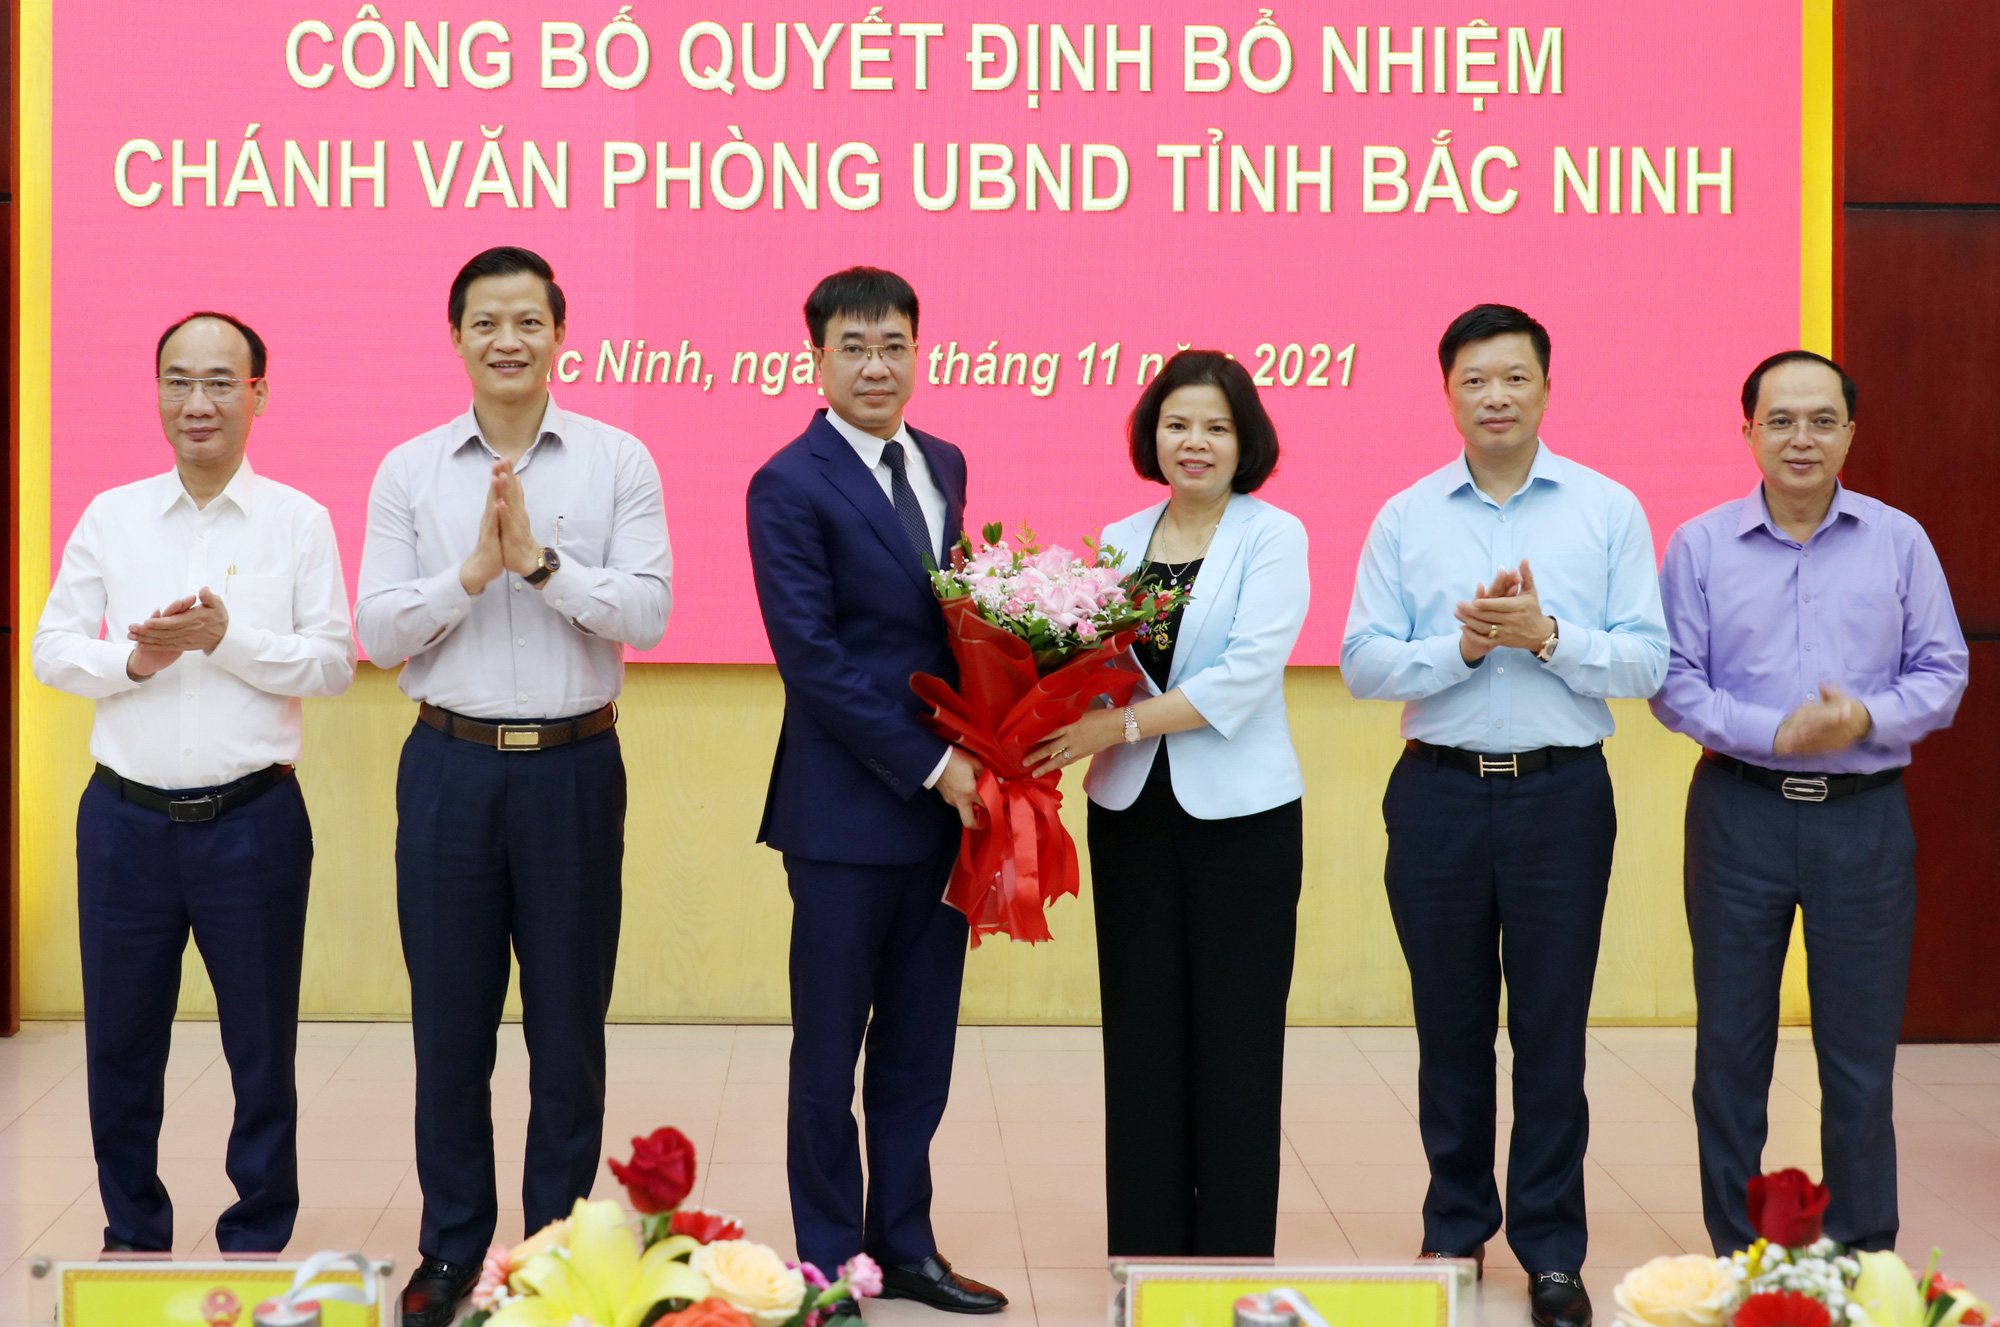 Ông Vũ Huy Phương được bổ nhiệm giữ chức Chánh văn phòng UBND tỉnh Bắc Ninh - Ảnh 2.